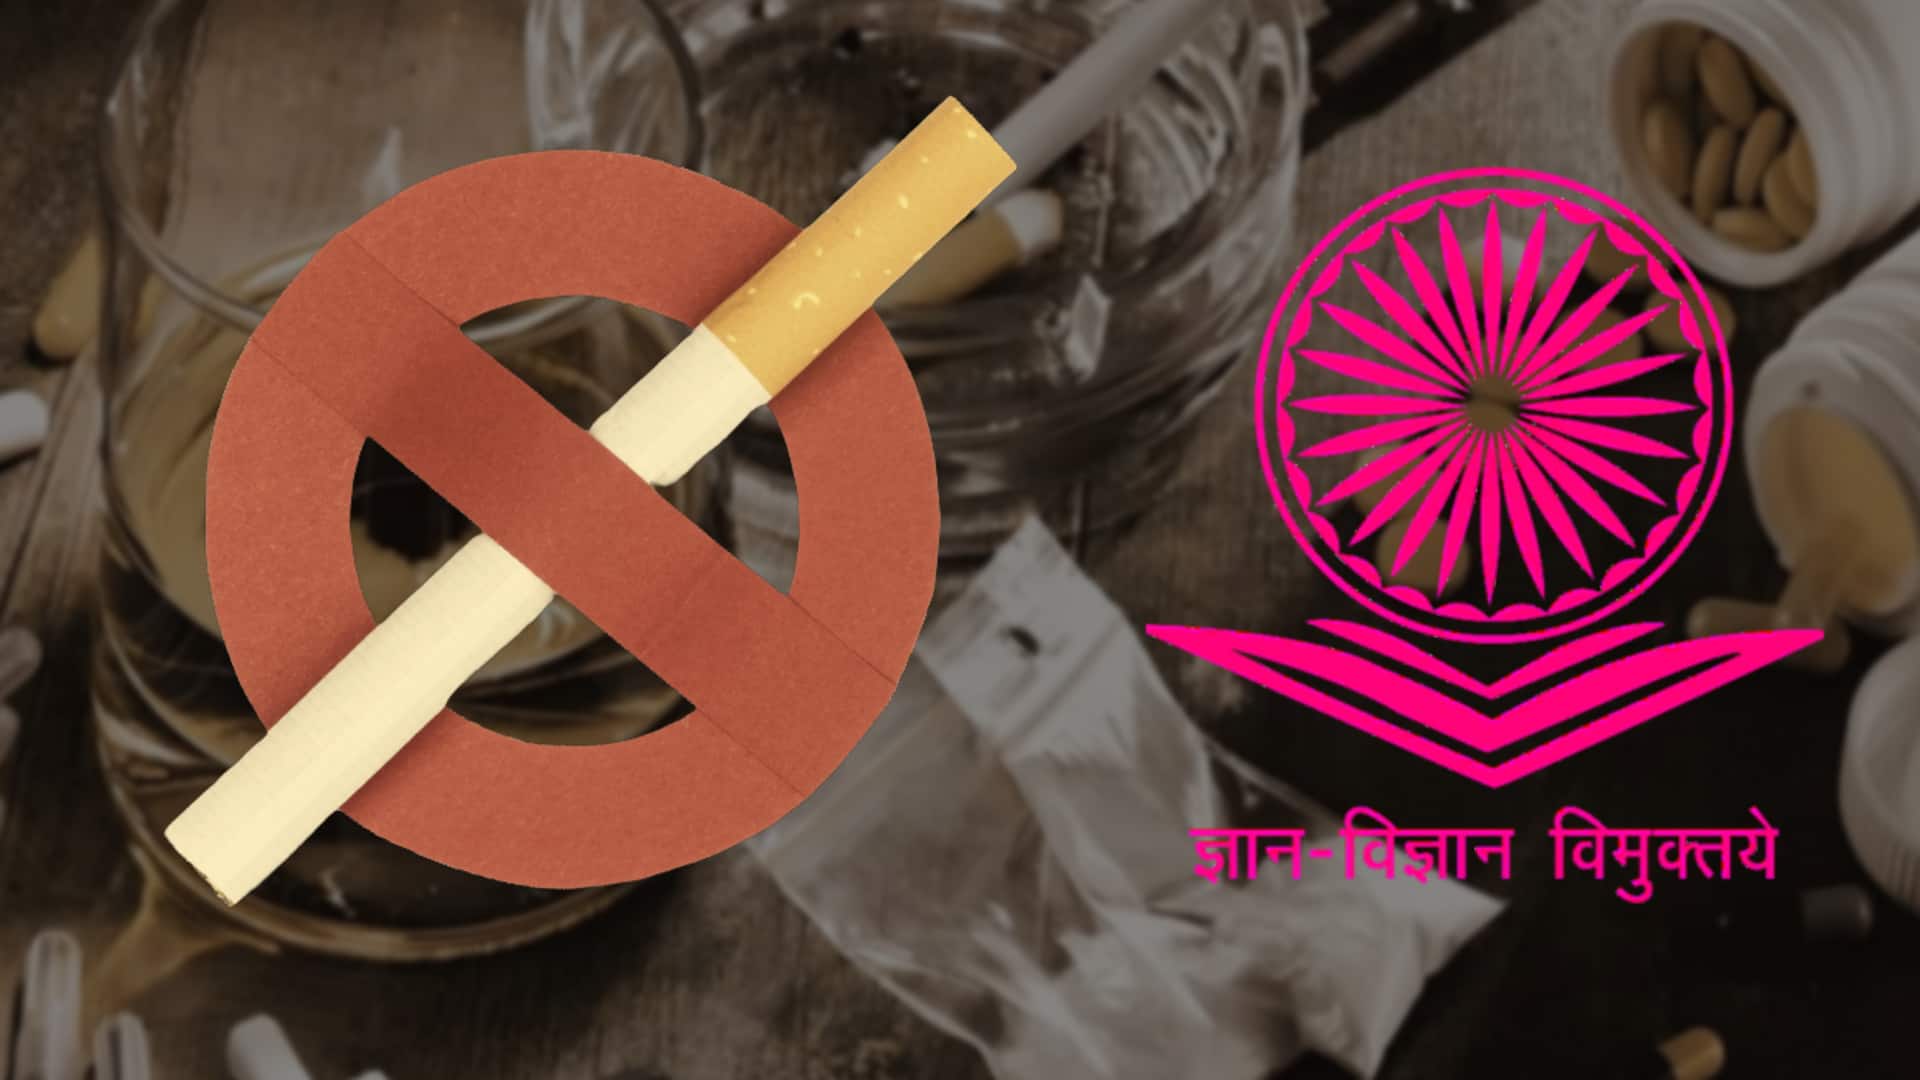 UGC ने विश्वविद्यालयों को लिखा पत्र, कहा- नशे के खिलाफ छात्रों को दिलाएं शपथ